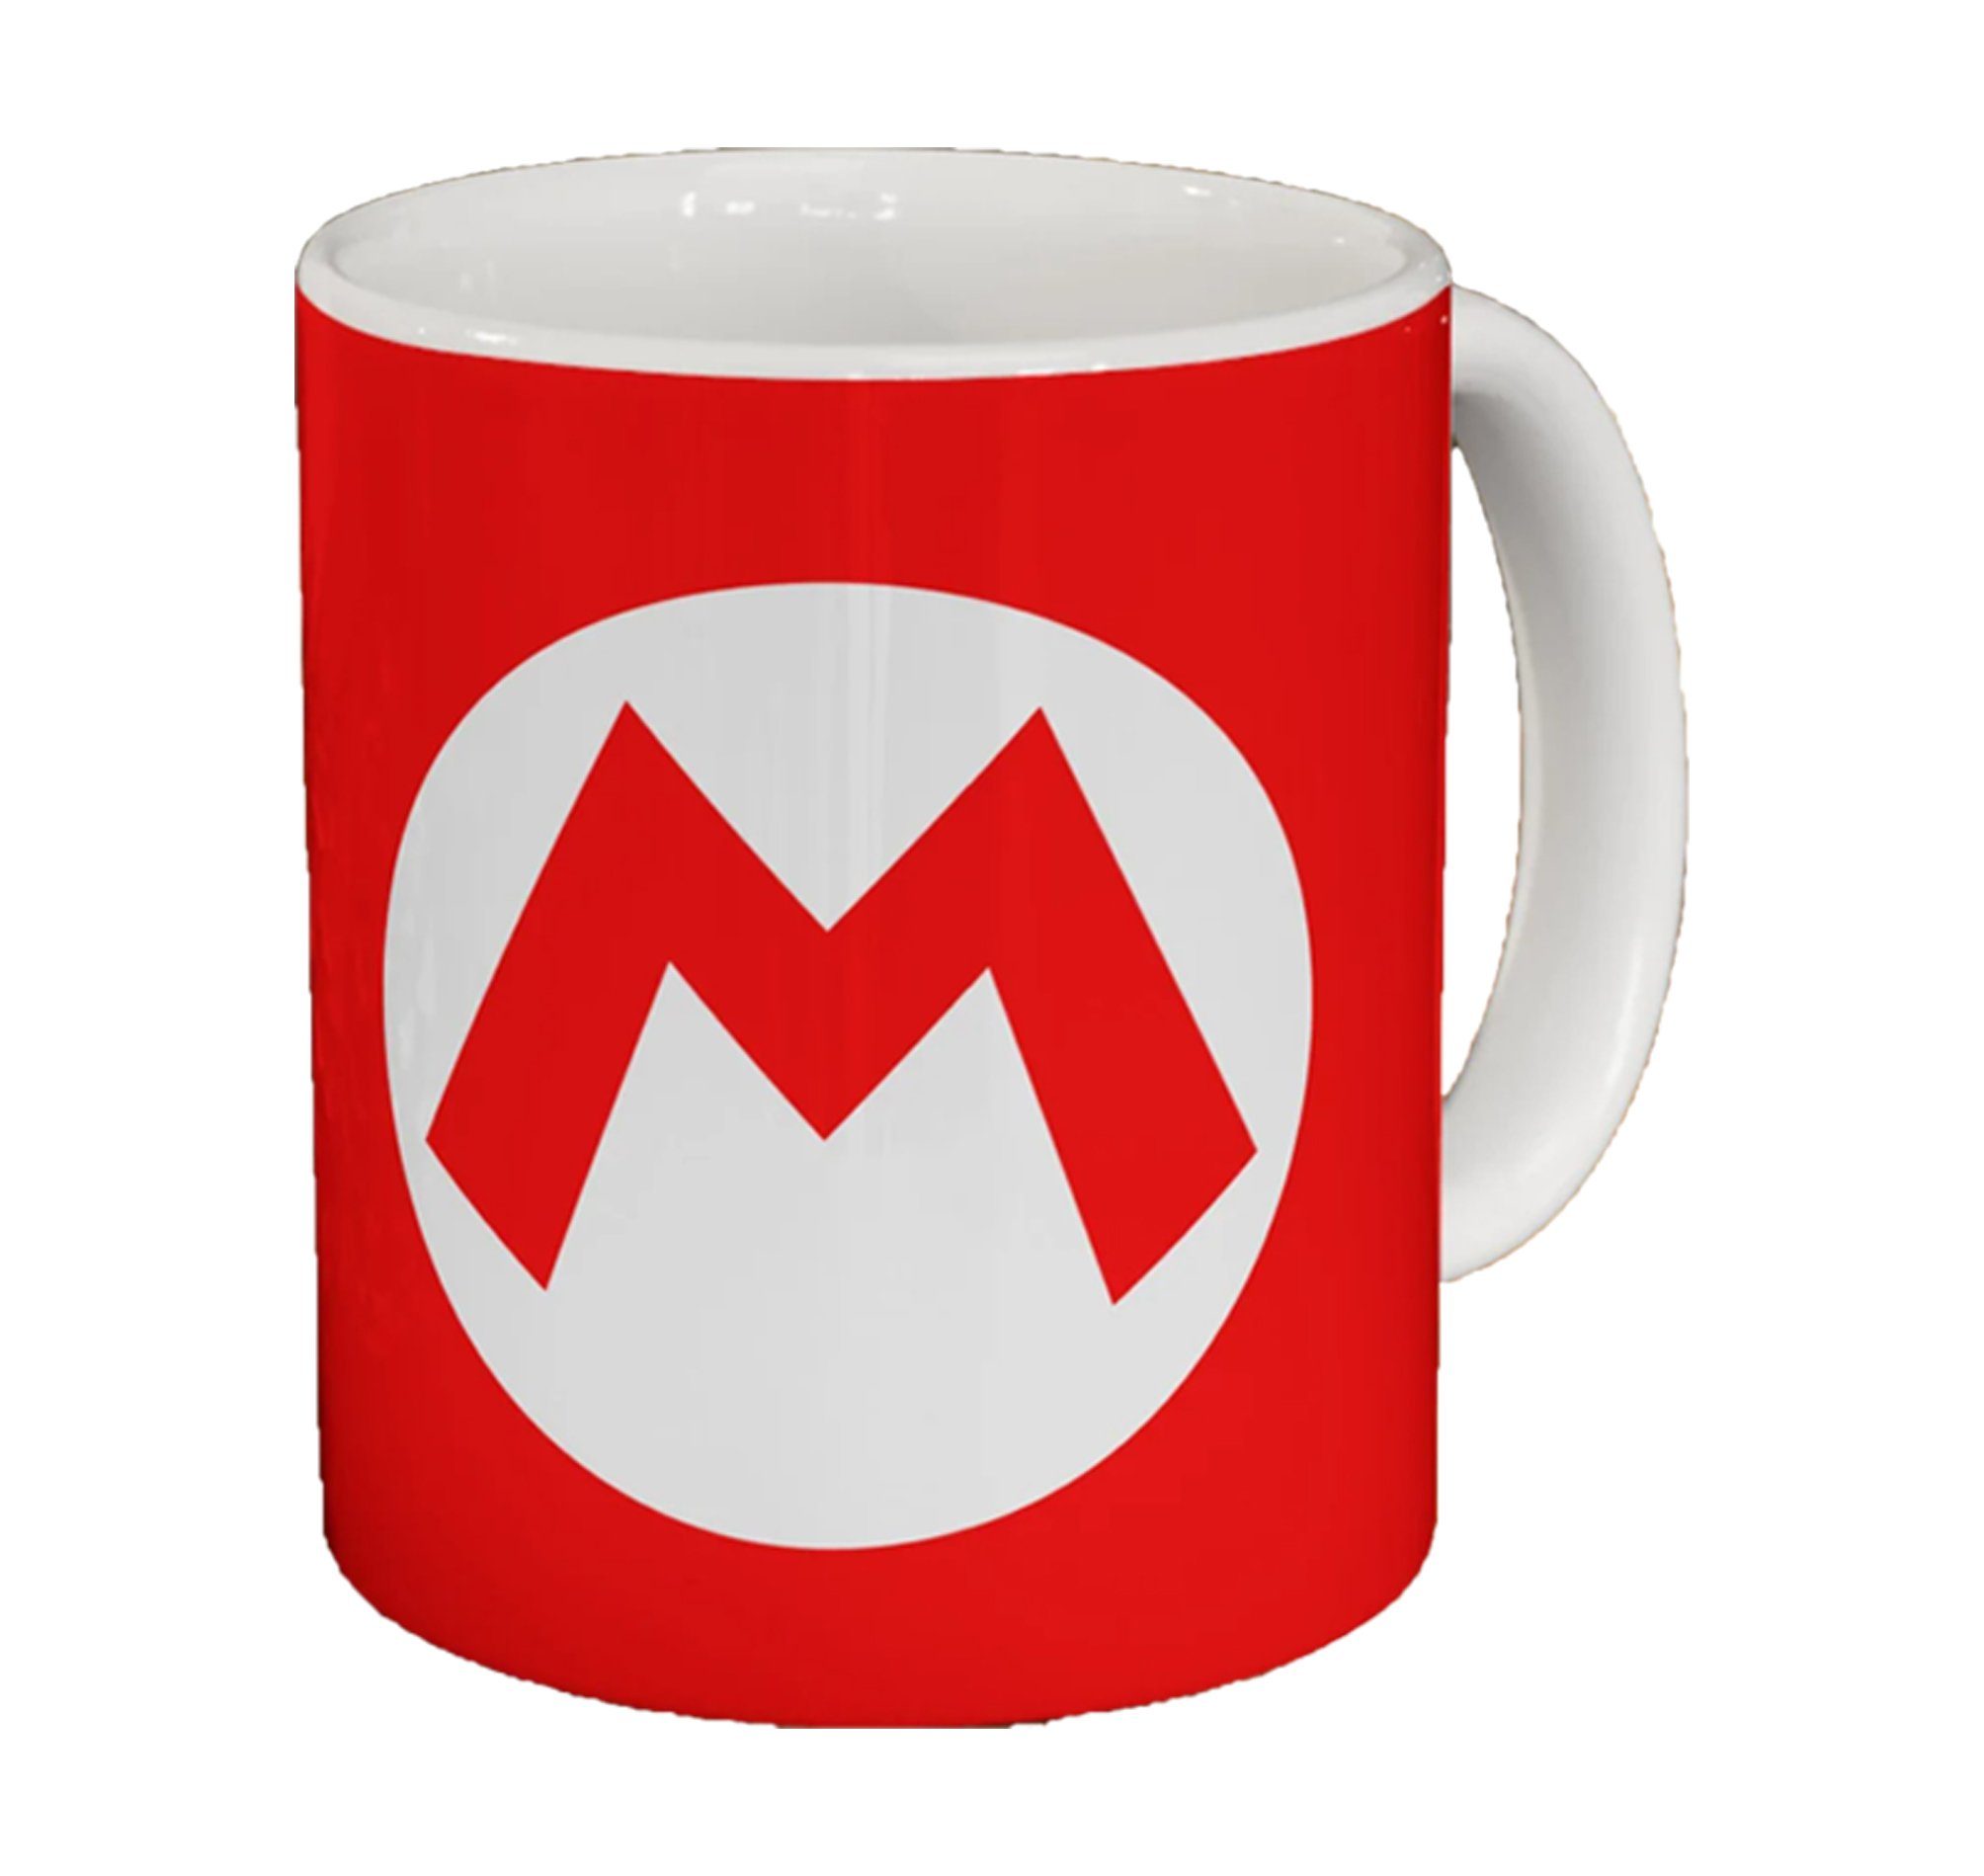 Gamning Mario & Keramik, Tasse Peach Mario Brownie (Rot) Logo Nintendo Blondie Yoshi Set, Luigi im Fullprint